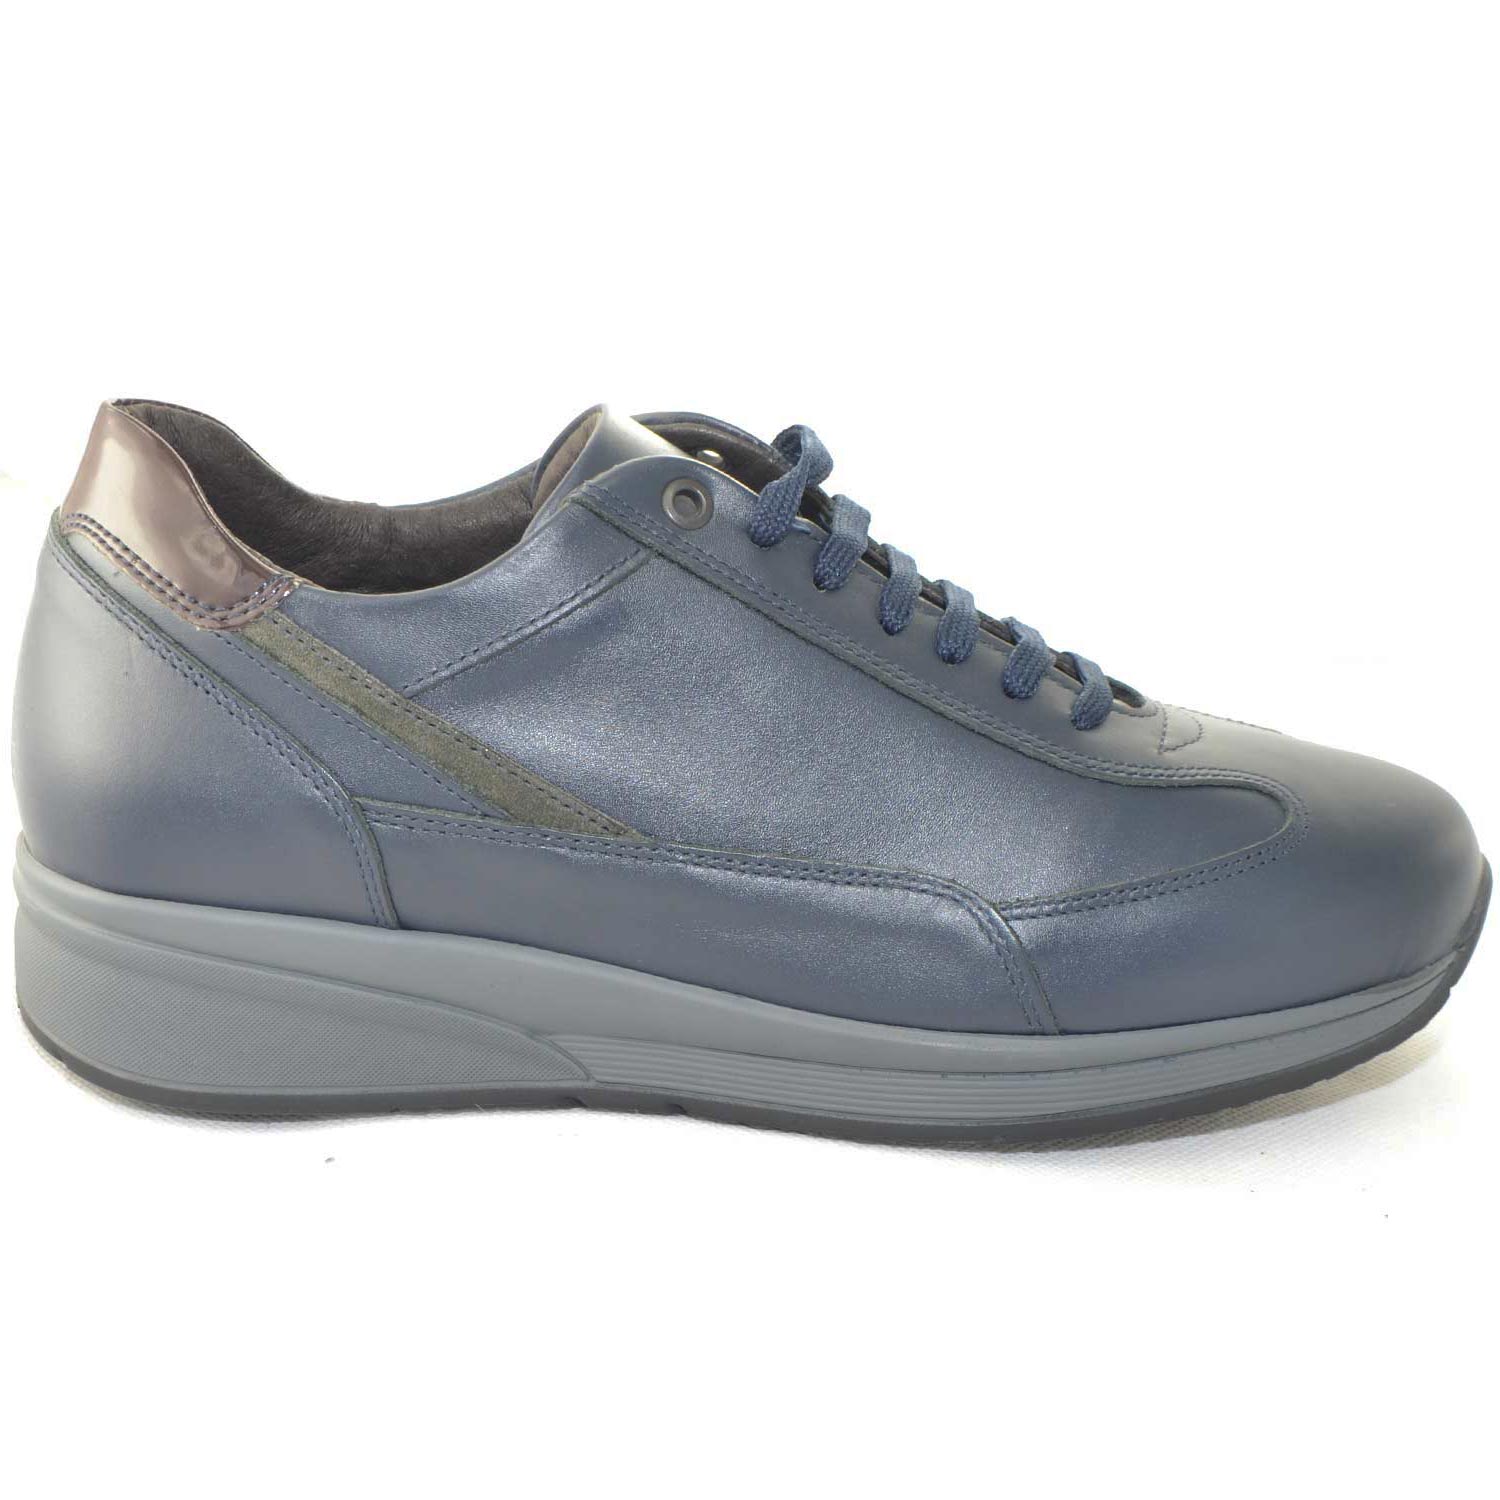 Scarpe uomo sneakers bassa made in italy vera pelle nappa blu e vernice a contrasto linea maschile comfort antiscivolo.